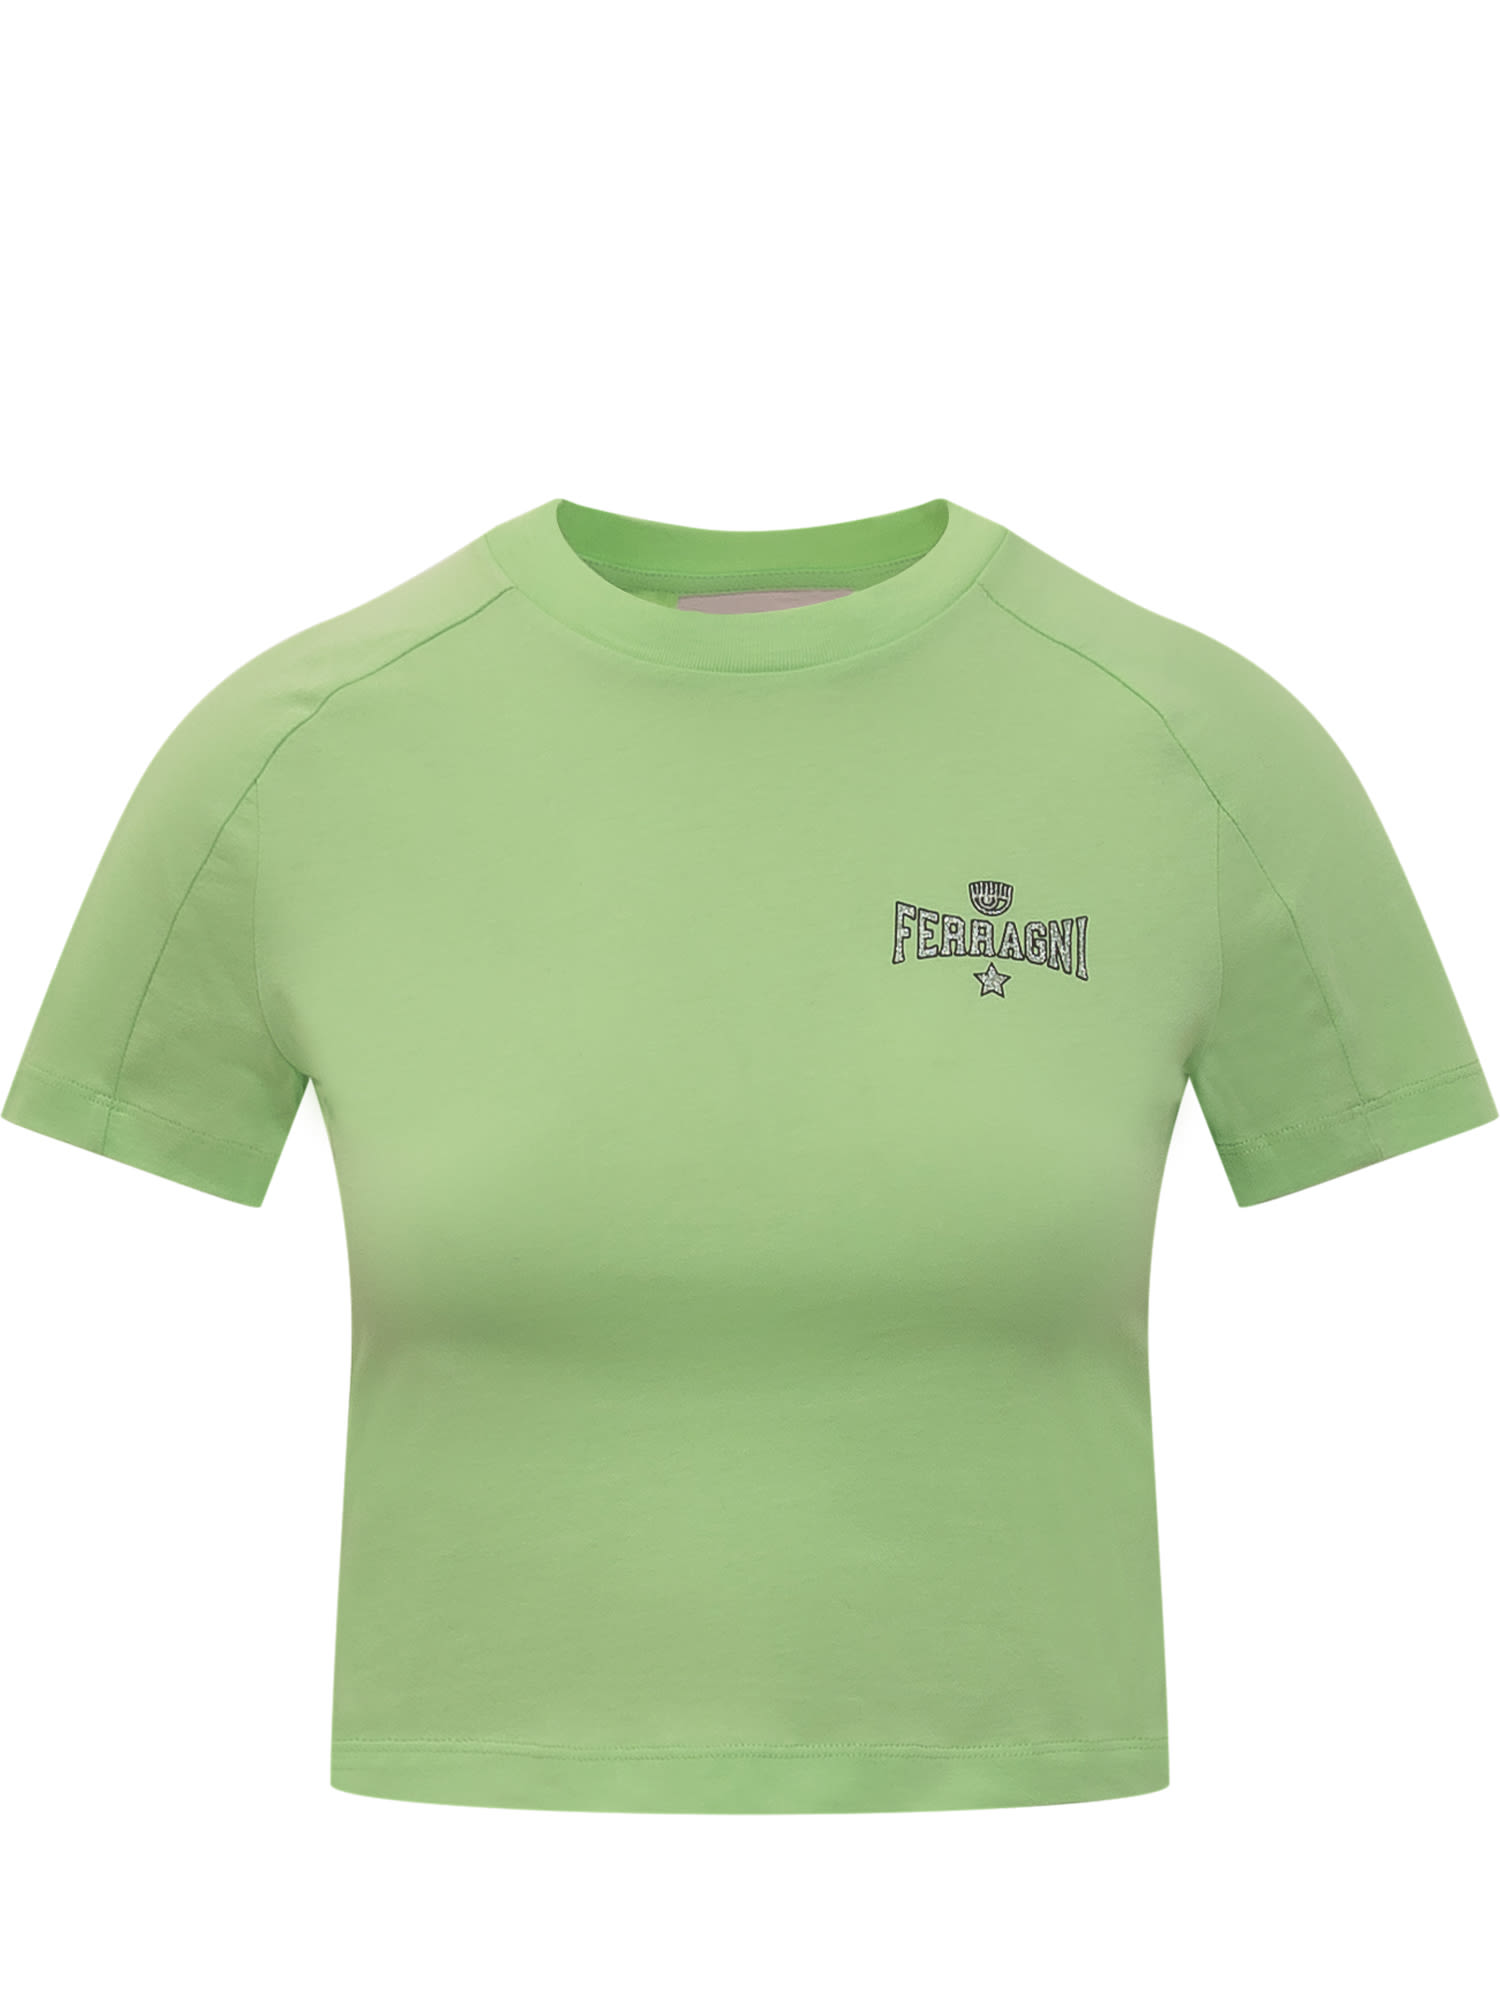 Shop Chiara Ferragni Ferragni 602 T-shirt In Verde